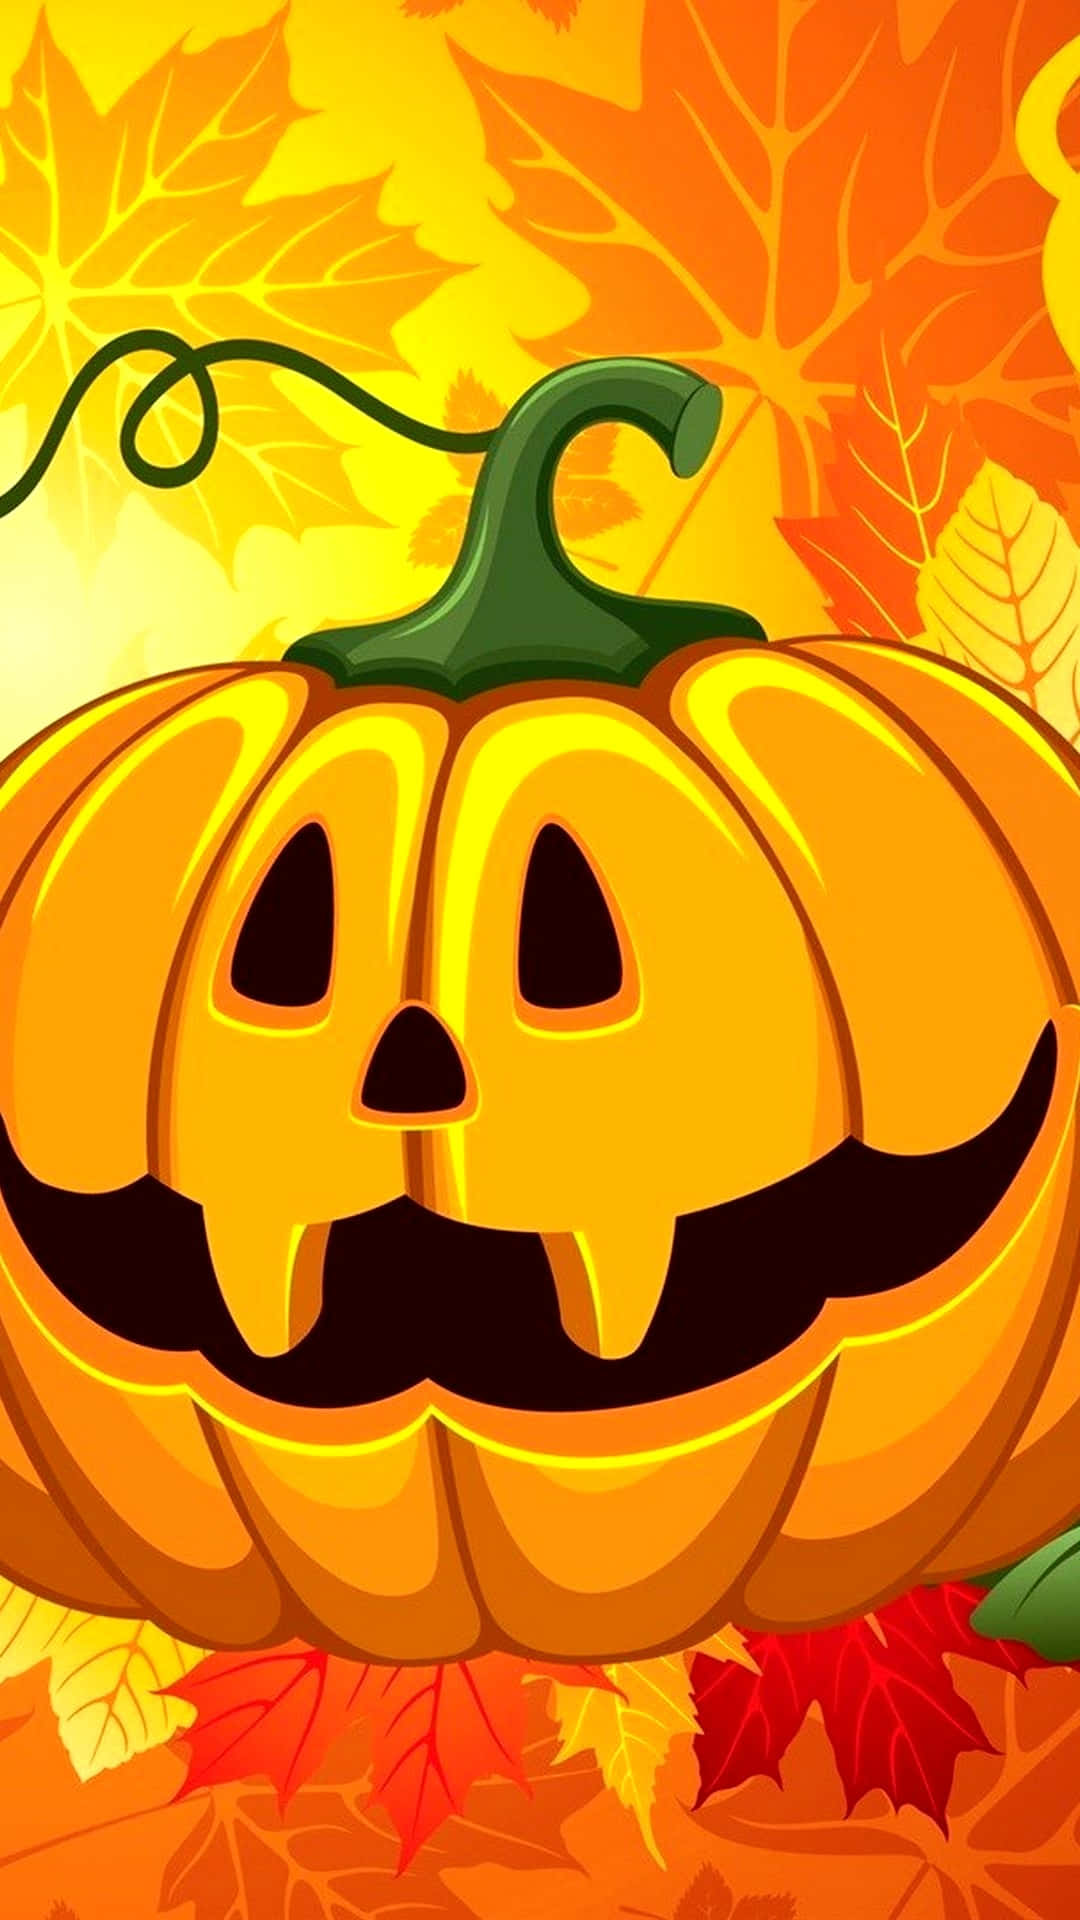 Sfondodi Halloween Per Iphone Con Grafica Di Jack O'lantern (la Zucca Intagliata A Forma Di Faccia) E Foglie D'acero.